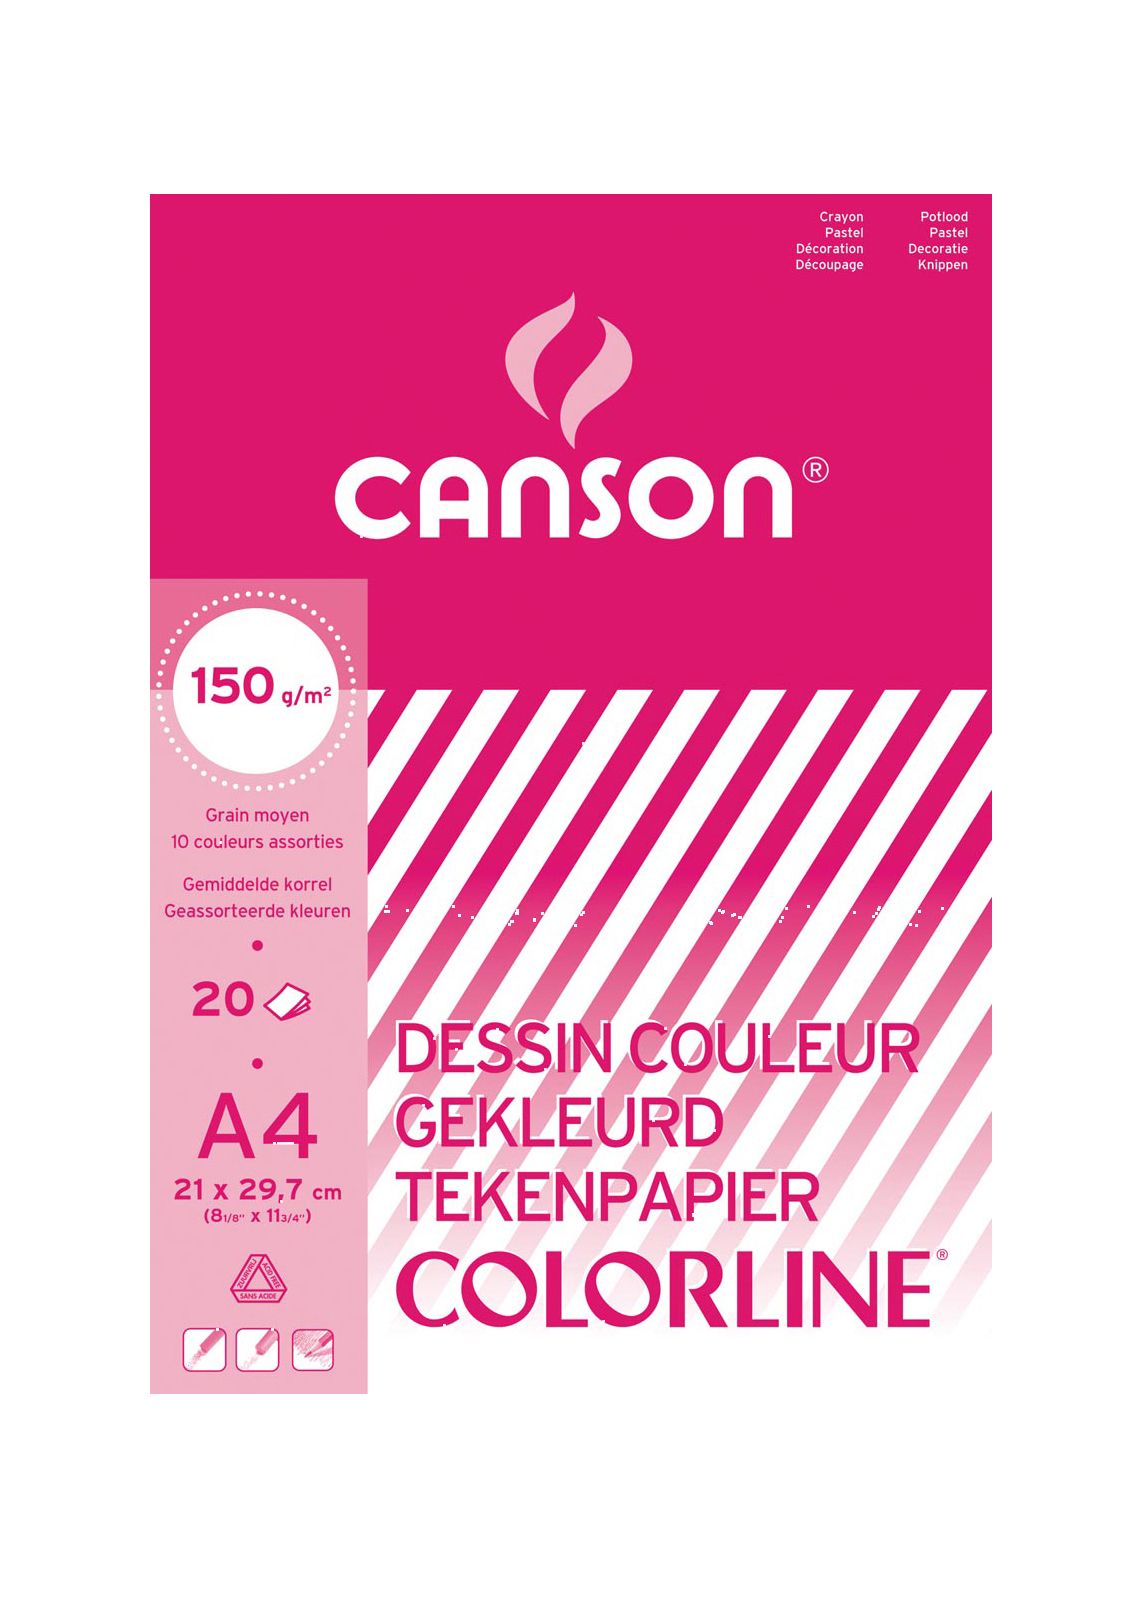 Canson Mi-Teintes - bloc de papier coloré - 20 feuilles 160g/m²